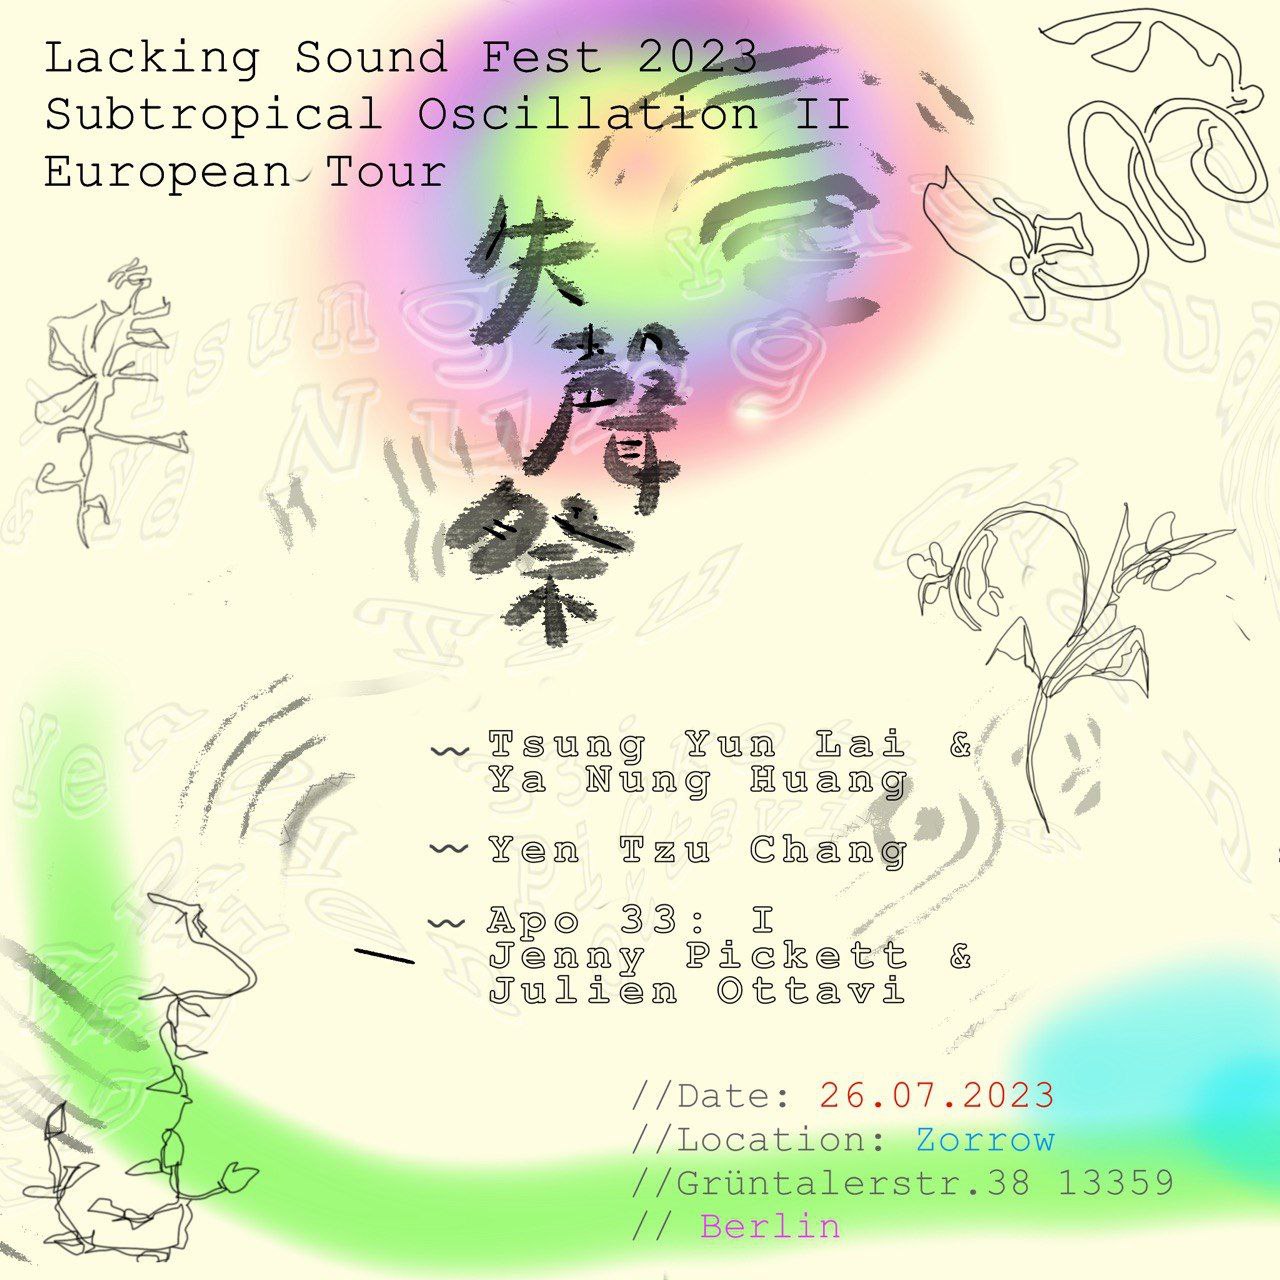 Lacking Sound Fest 2023(26.07.2023)